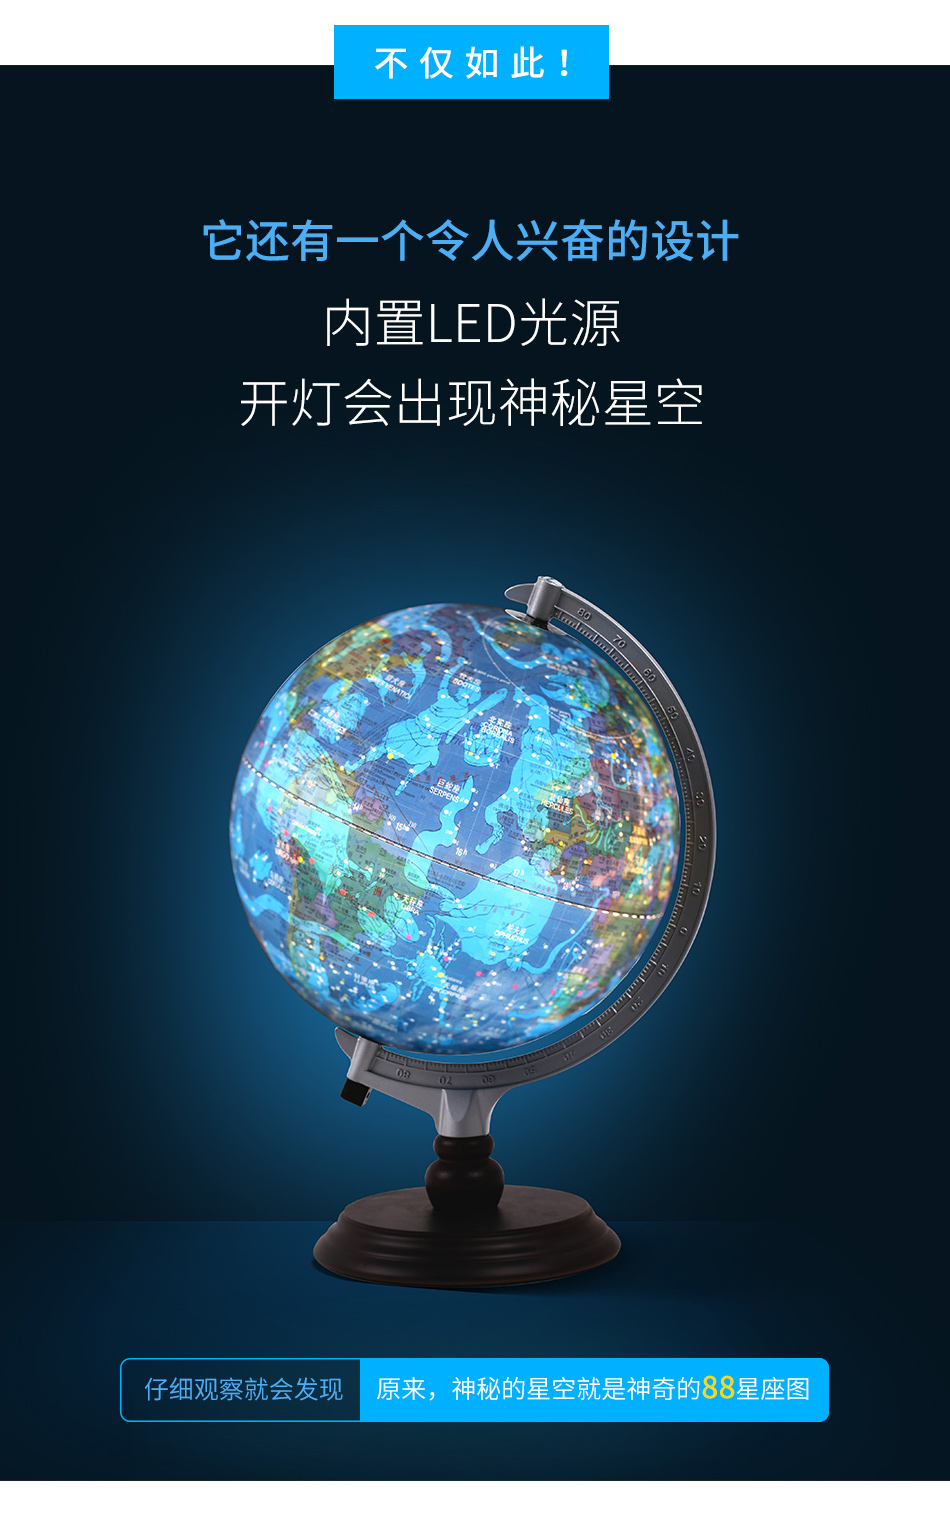 Dipper Globe